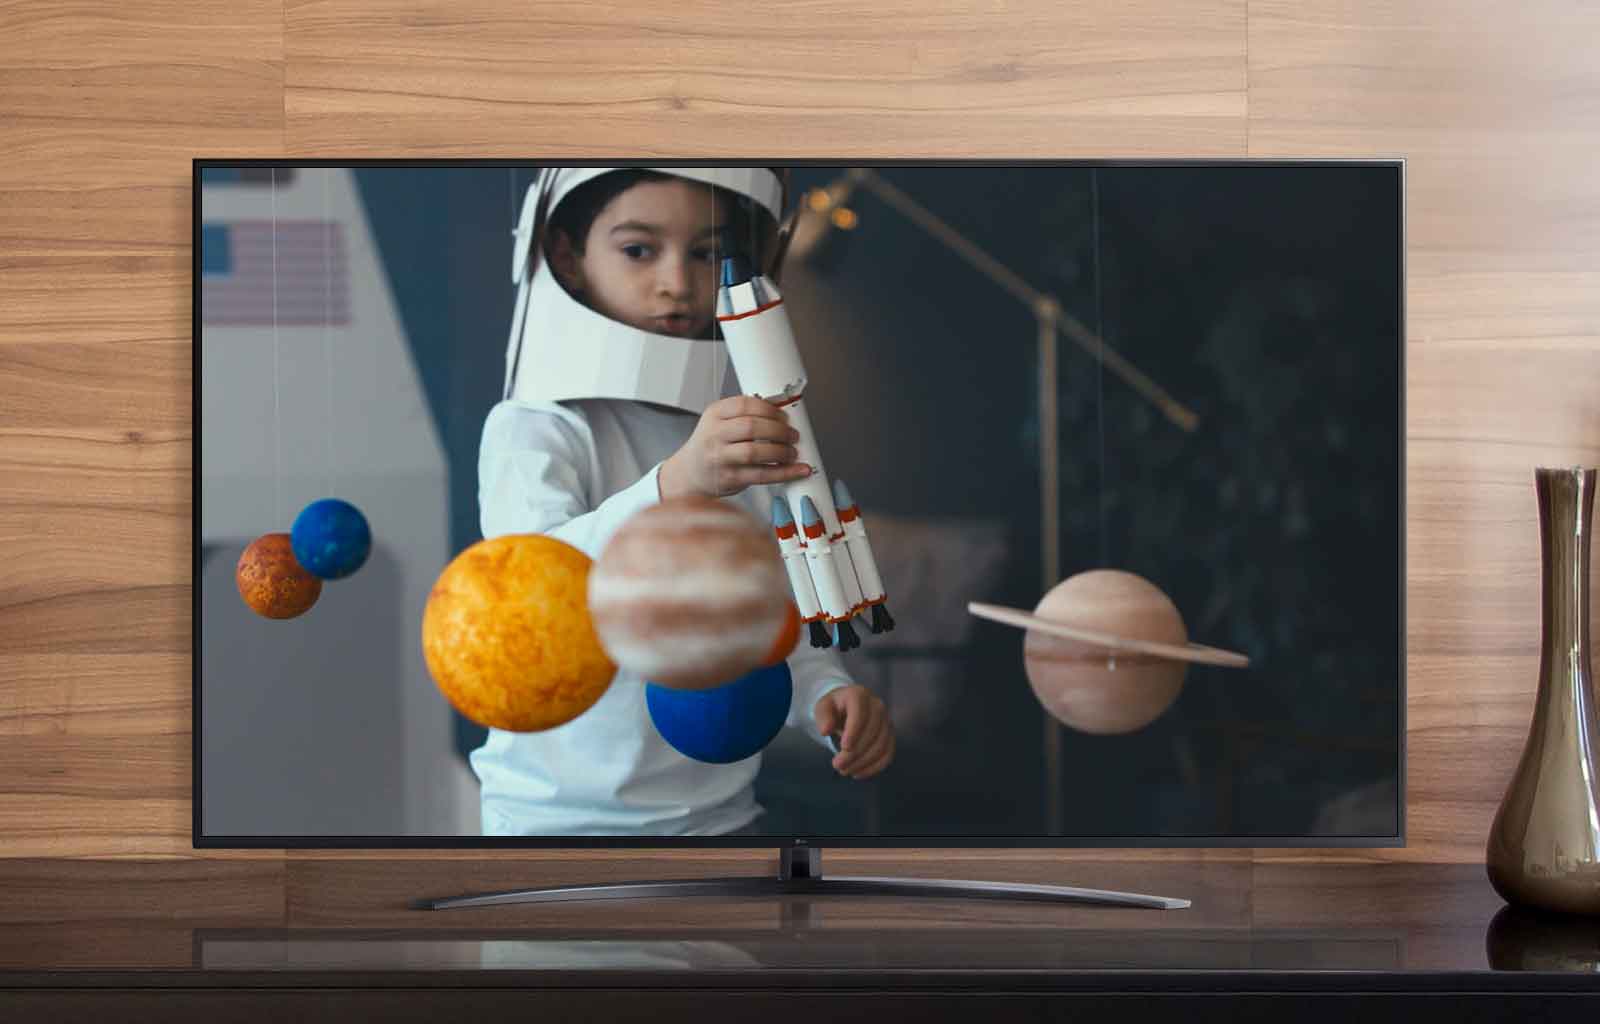 تظهر شاشة التلفزيون صبيًا في مركبة فضائية عصامية يلعب بسفينة فضاء في غرفته المزينة بكواكب مصغرة (تشغيل فيديو)